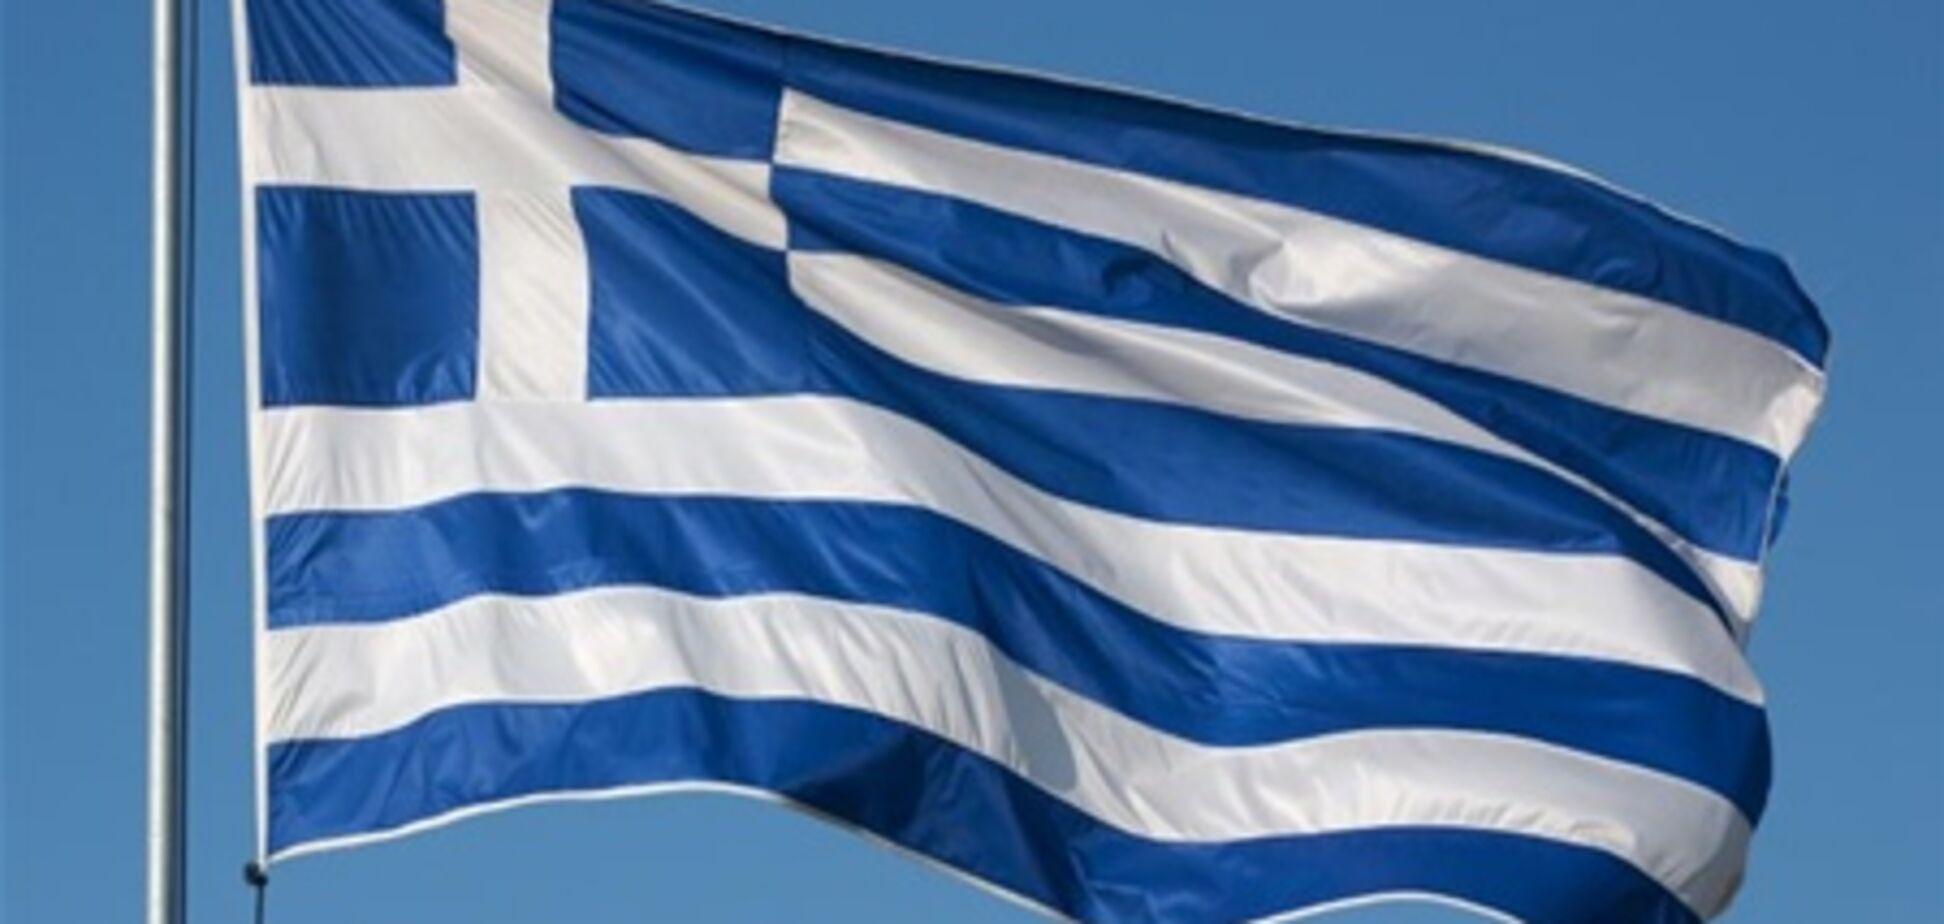 Еврогруппа выделит Греции 12 миллиардов евро